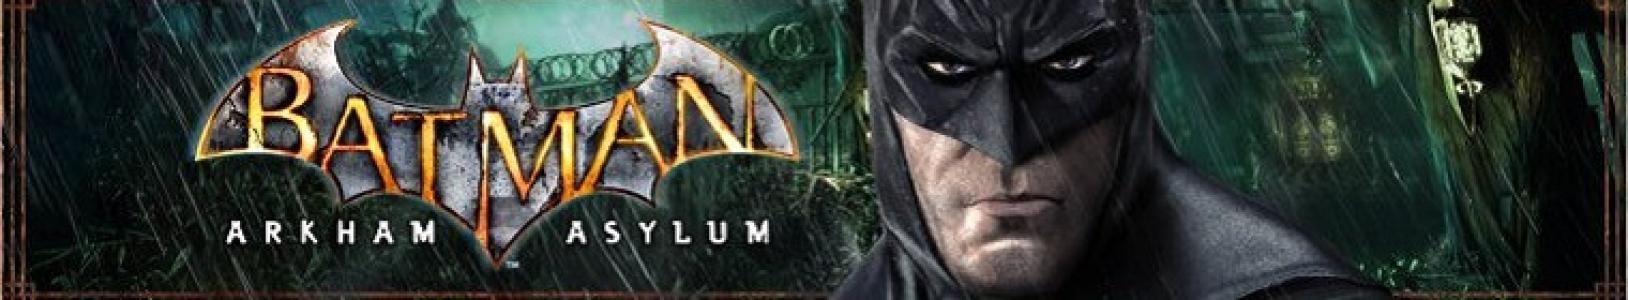 Batman: Arkham Asylum banner